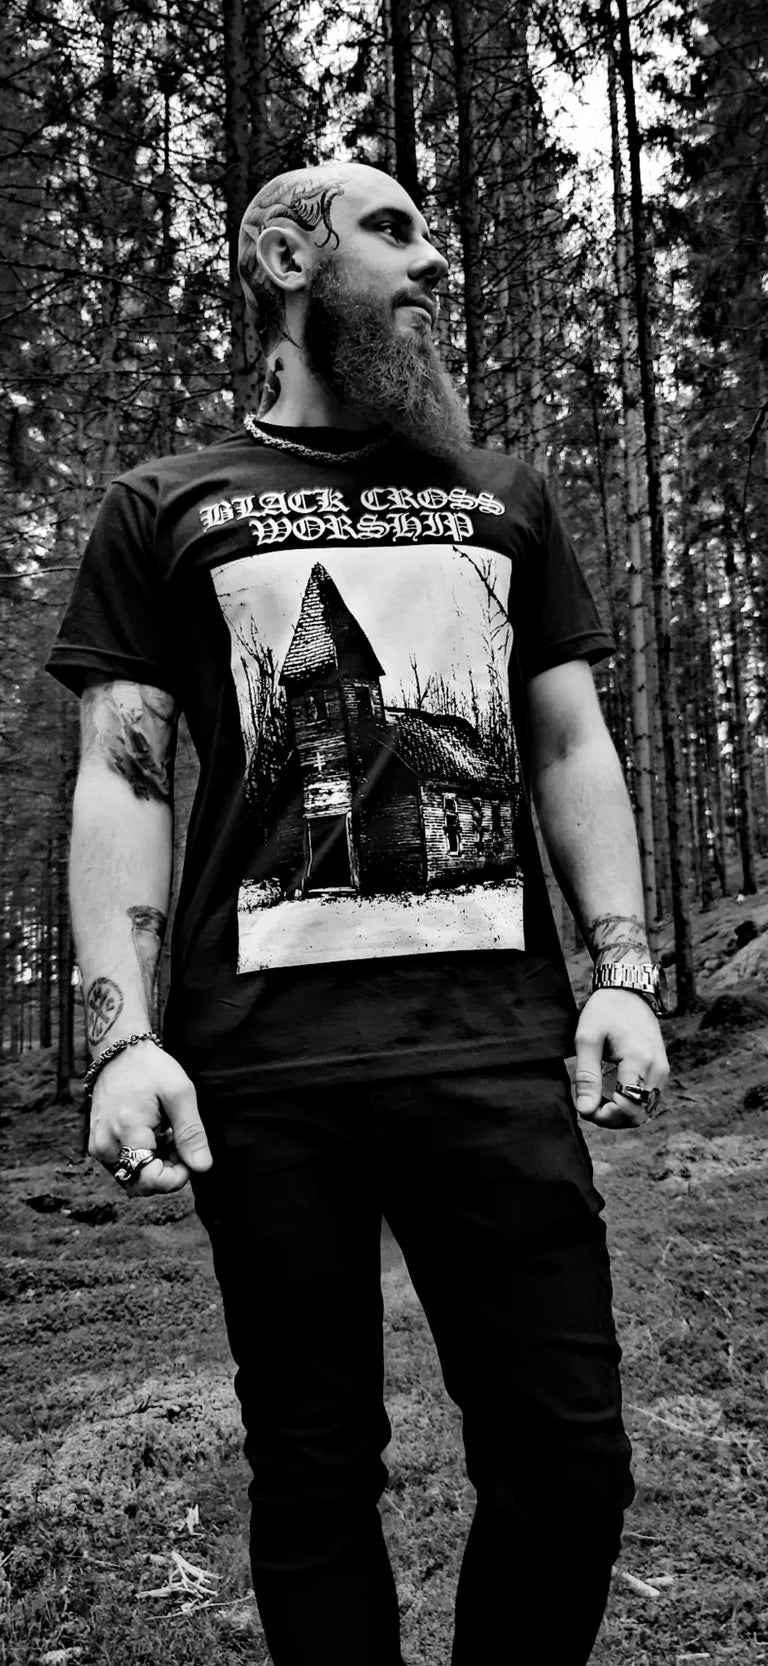 black cross worhsip - forest church t-shirt